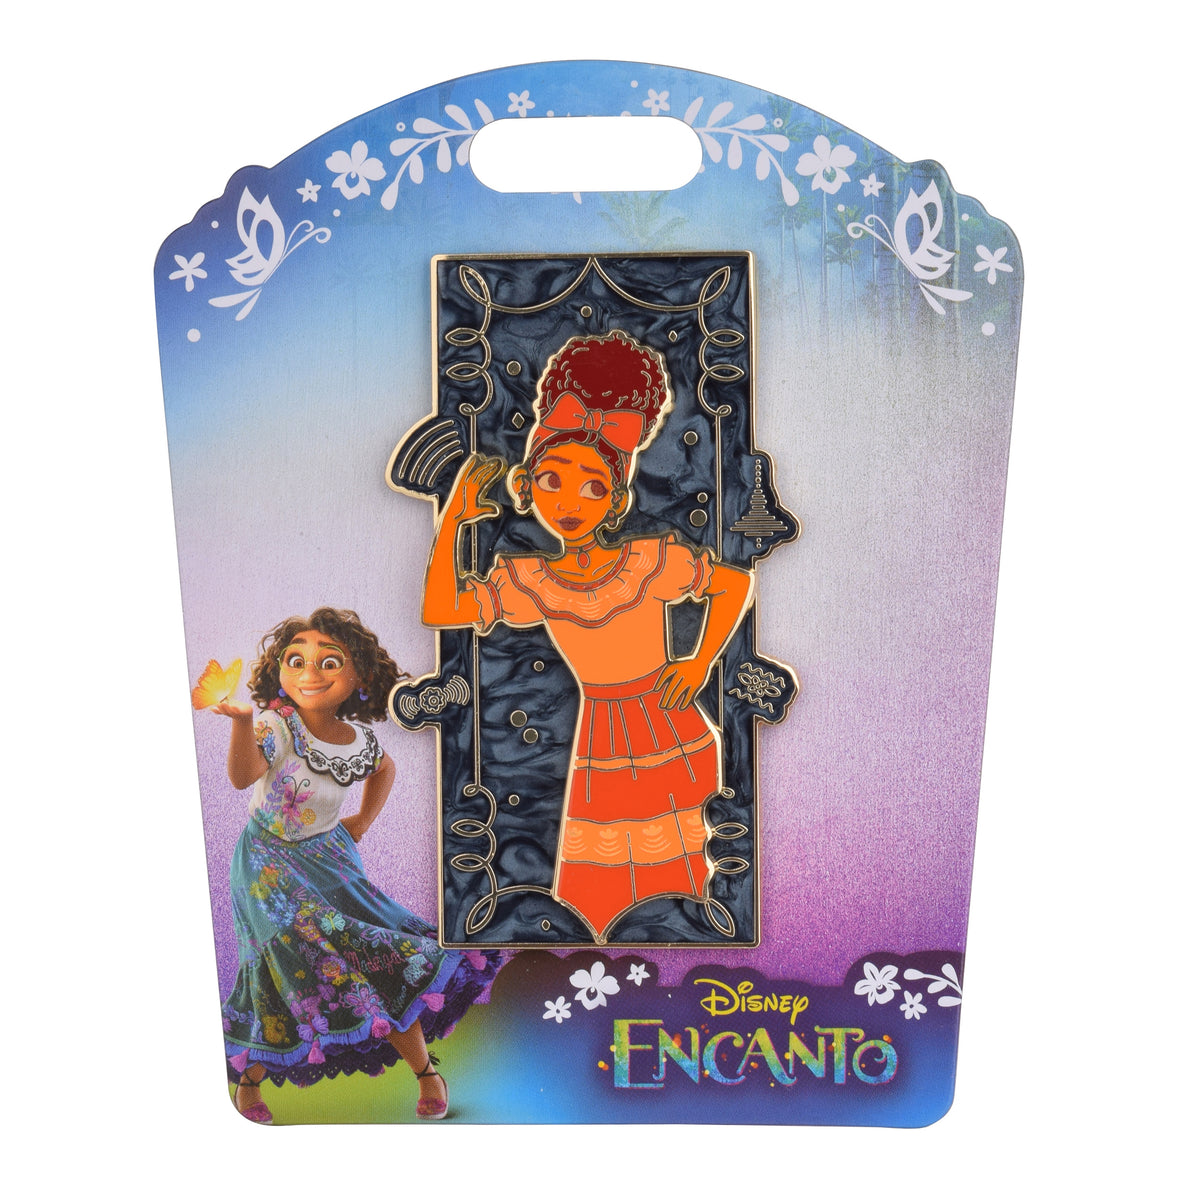 Disney Encanto Door Series Delores - Limited Edition 200